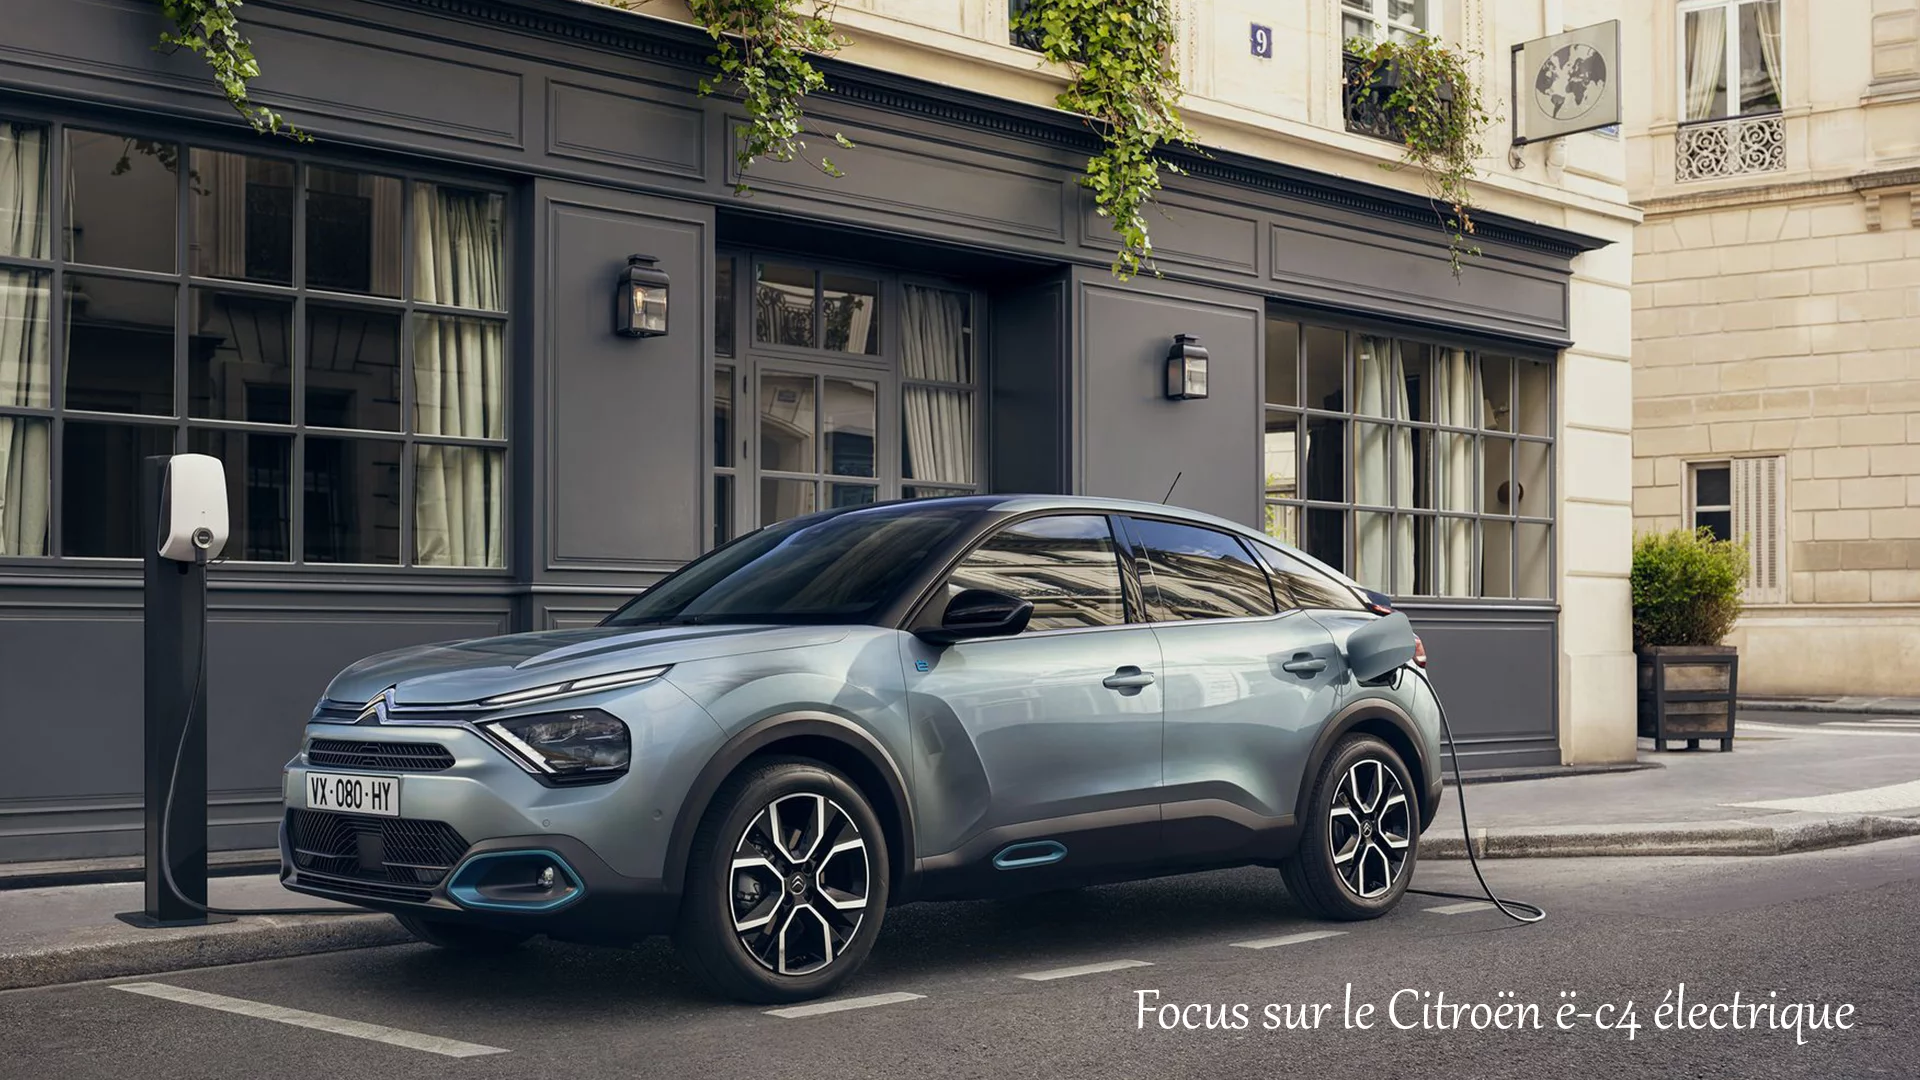 Focus sur le Citroën ë-c4 électrique